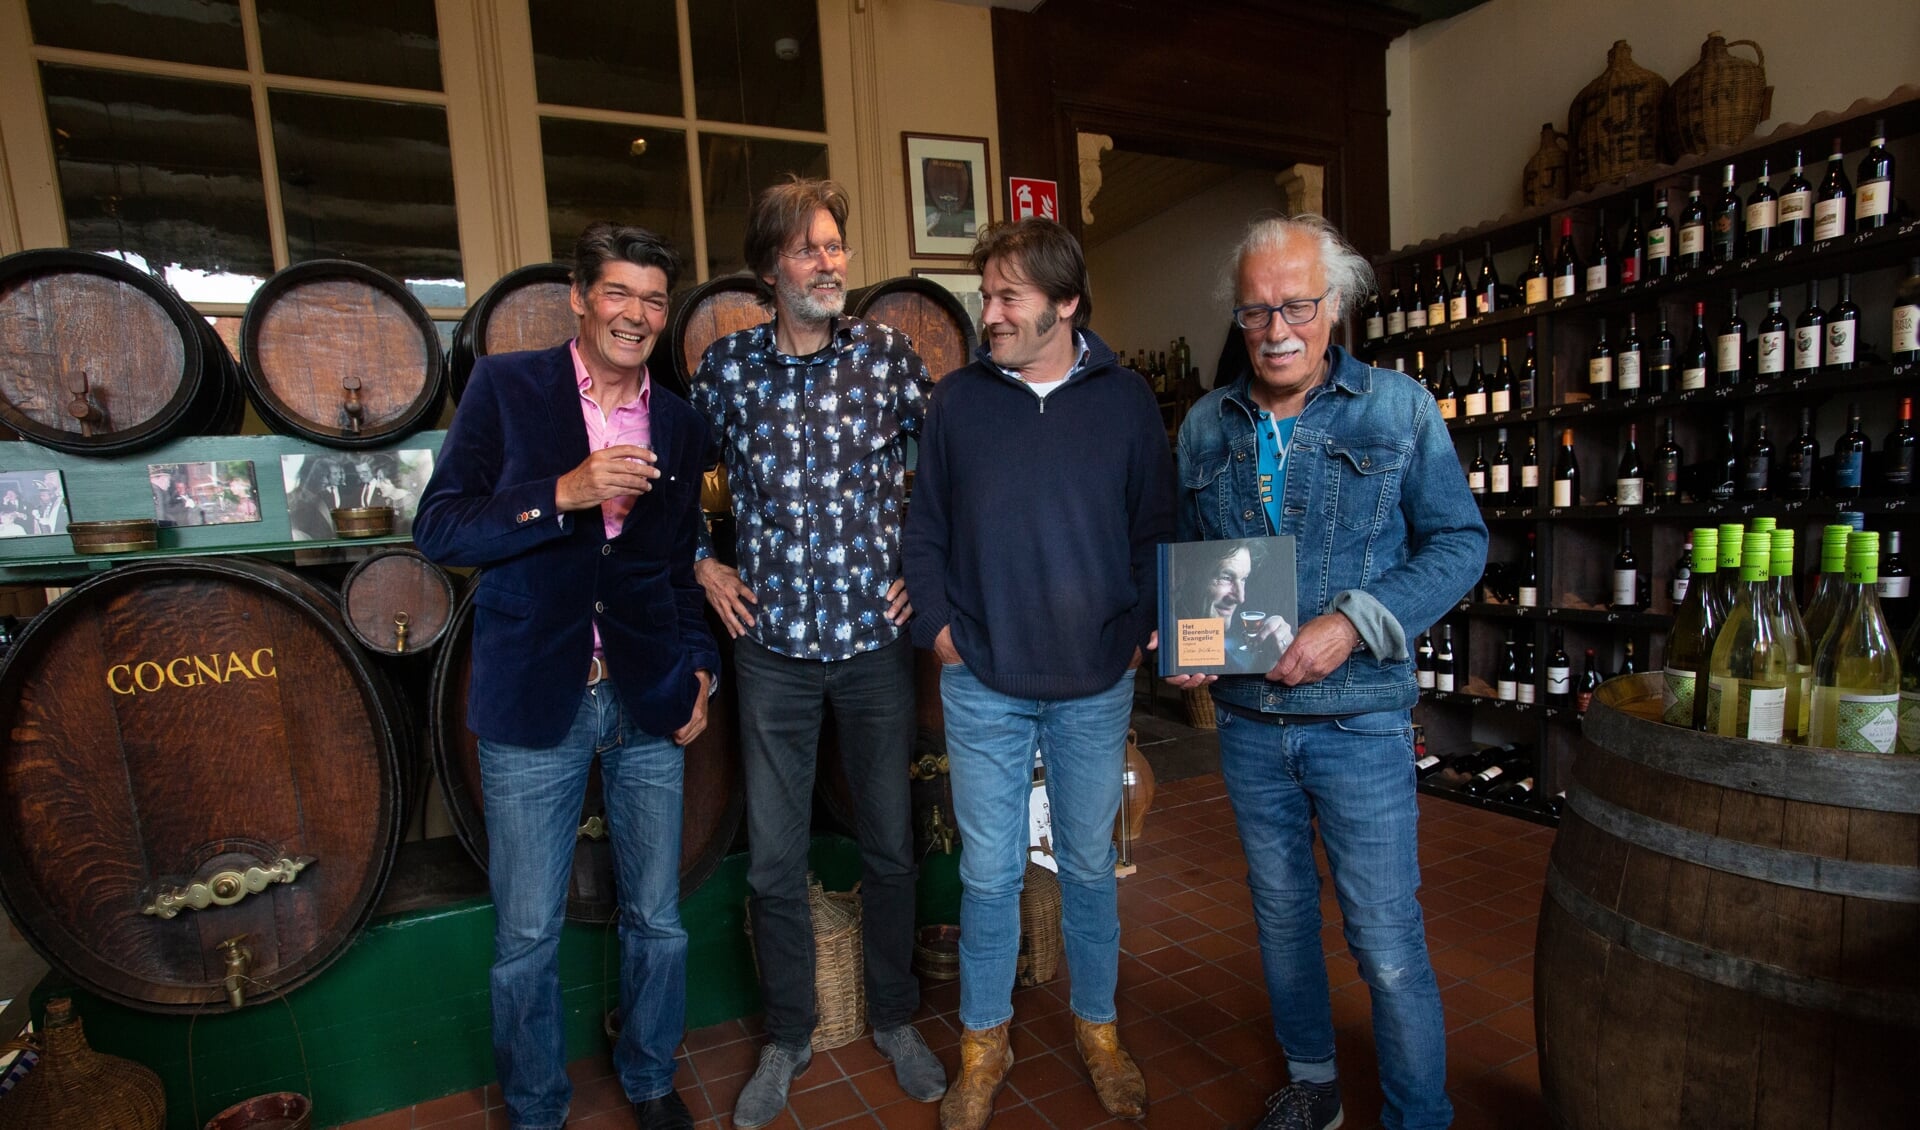 De makers van het boek. Van links naar rechts: Fotograaf Niels Westra, uitgever Eddy van der Noord, singer-songwriter Piter Wilkens en auteur Harry de Jong (Foto Berend Drent)